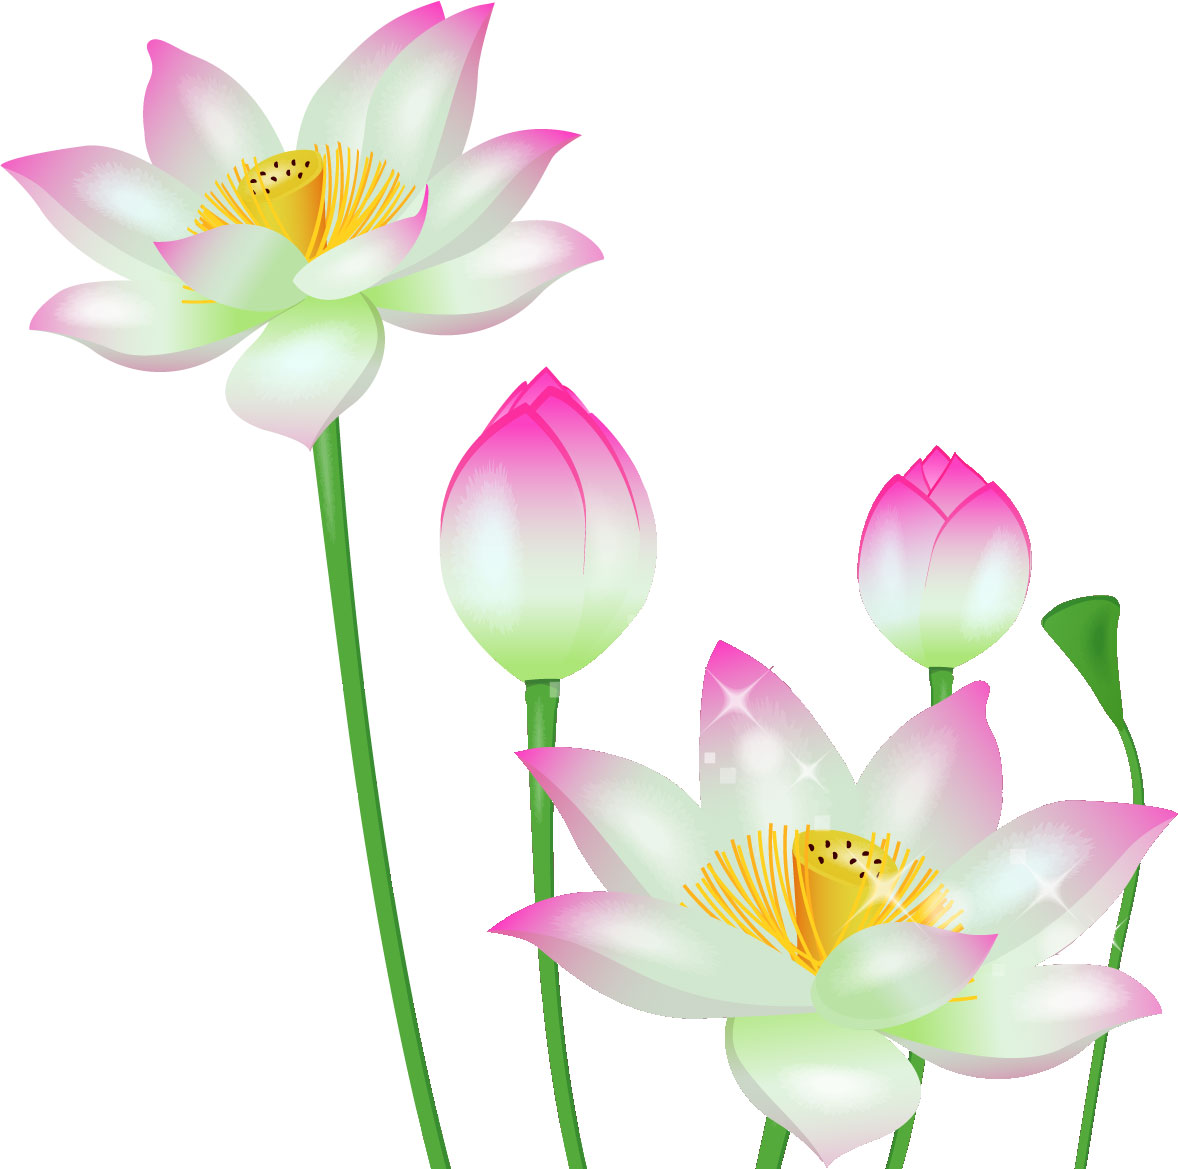 夏のイラストno 308 蓮の花とつぼみ 無料のフリー素材集 花鳥風月